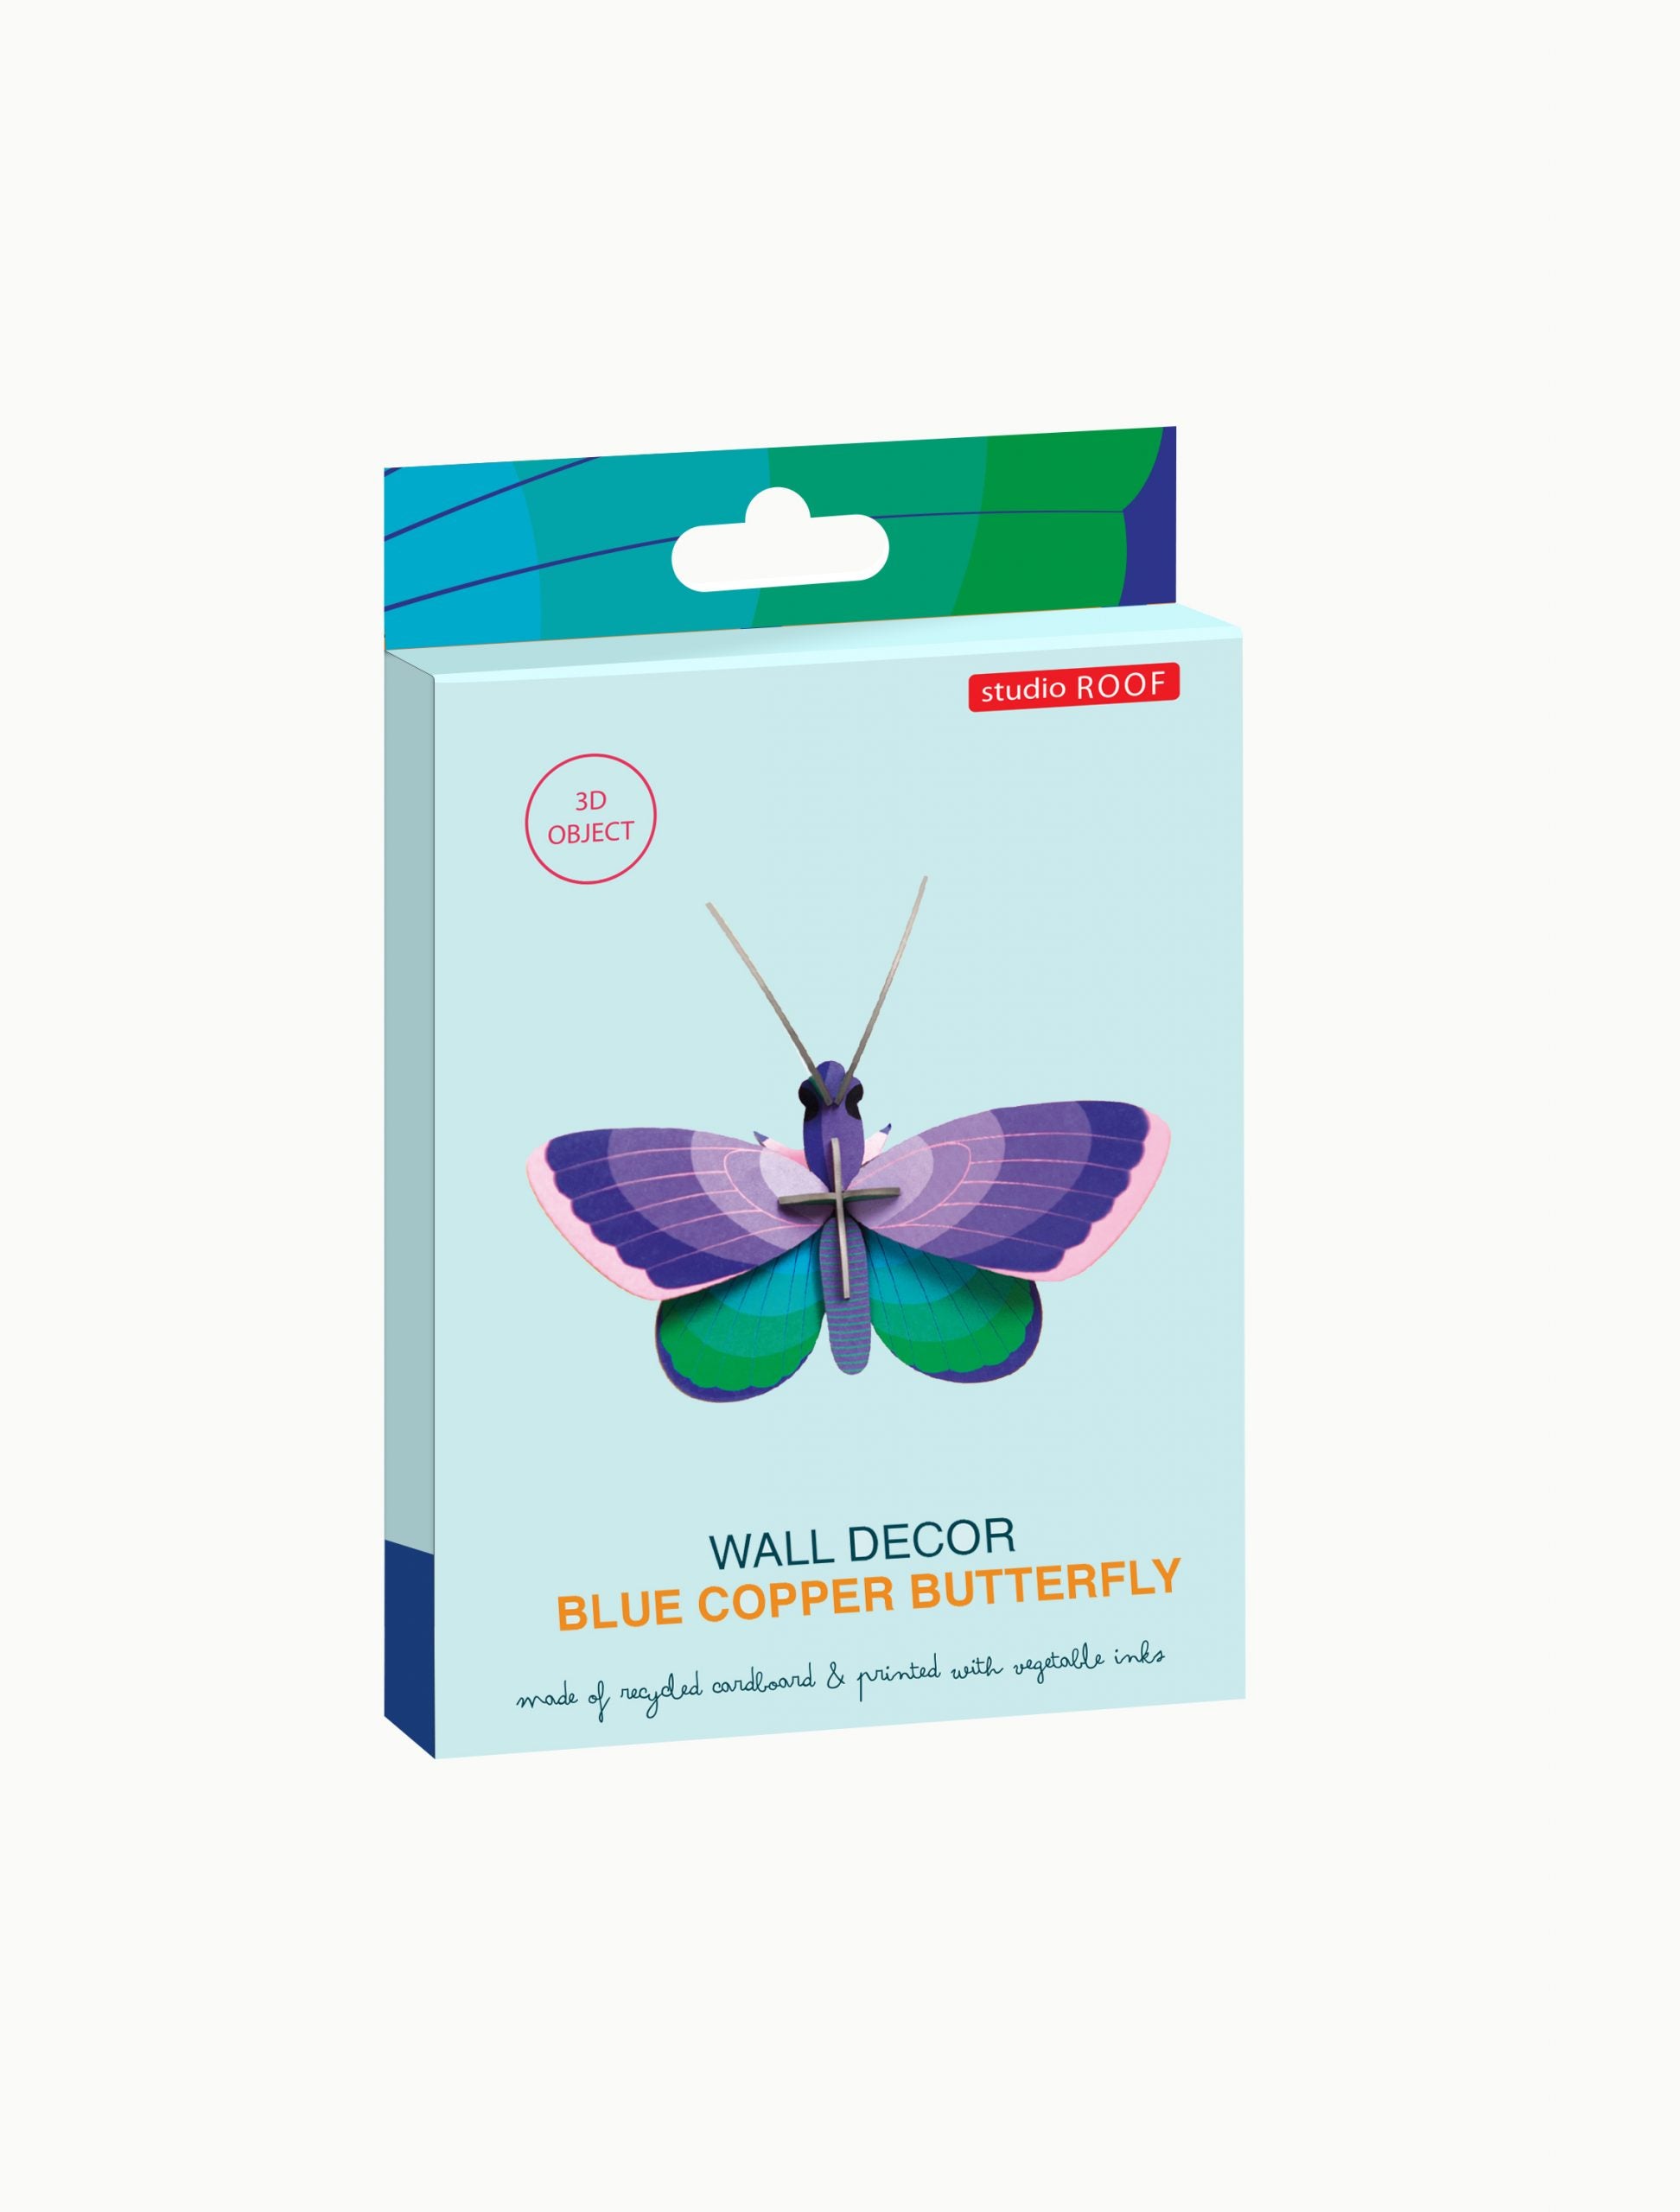 Závěsná dekorace na zeď motýl Blue Copper Butterfly modrásek od značky Studio ROOF